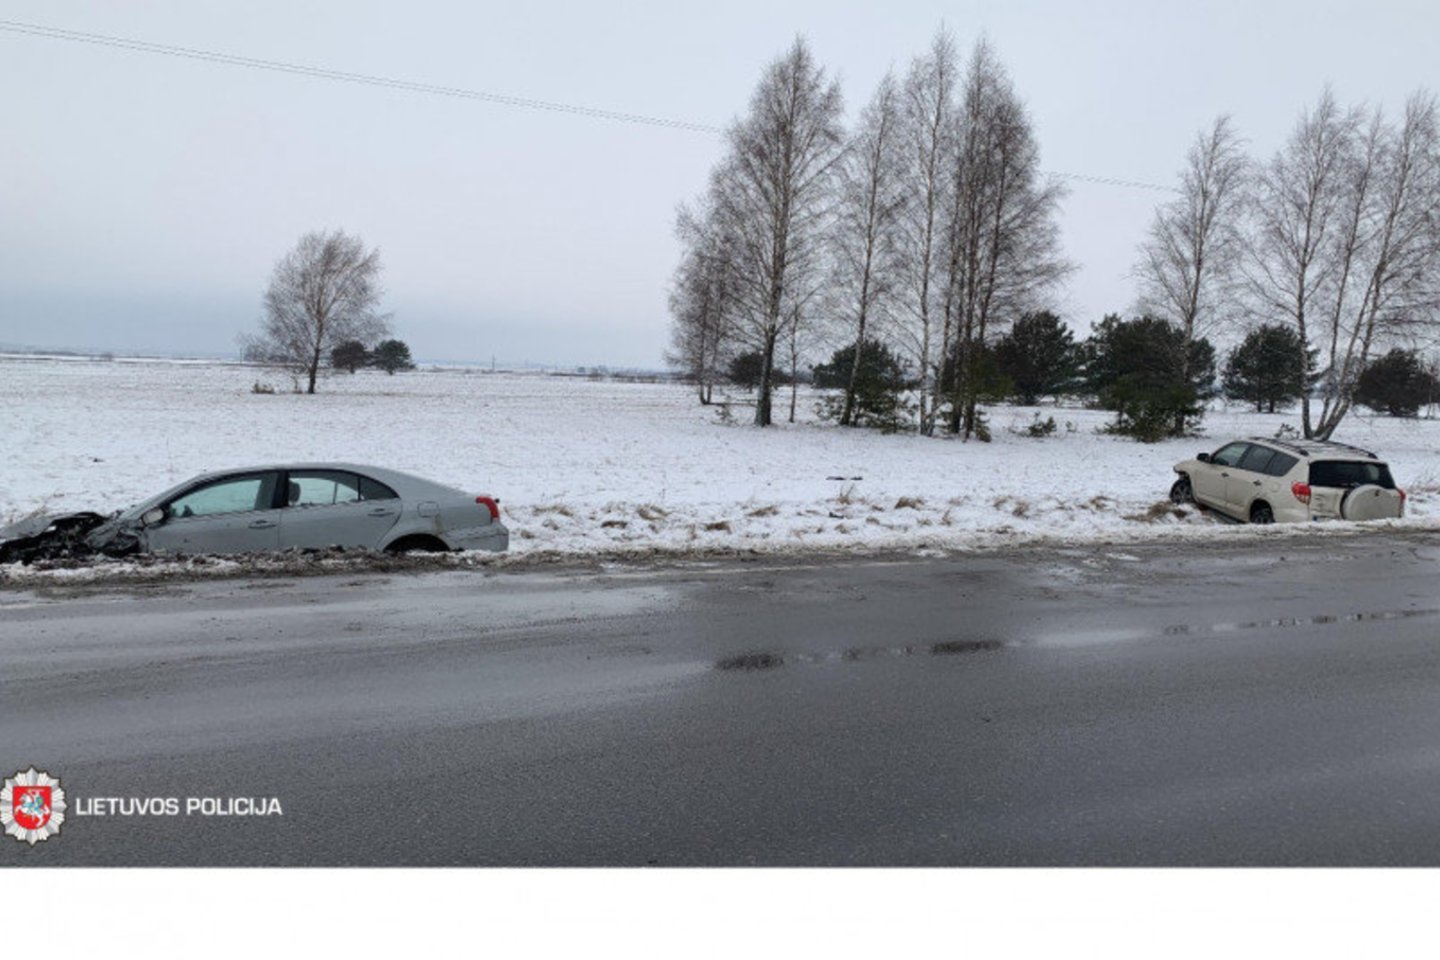 Žmonės nukentėjo 14 eismo įvykių. Sužeisti 22 asmenys, tarp jų – 3 nepilnamečiai (keleiviai).<br> Lietuvos kelių policijos tarnybos nuotr.